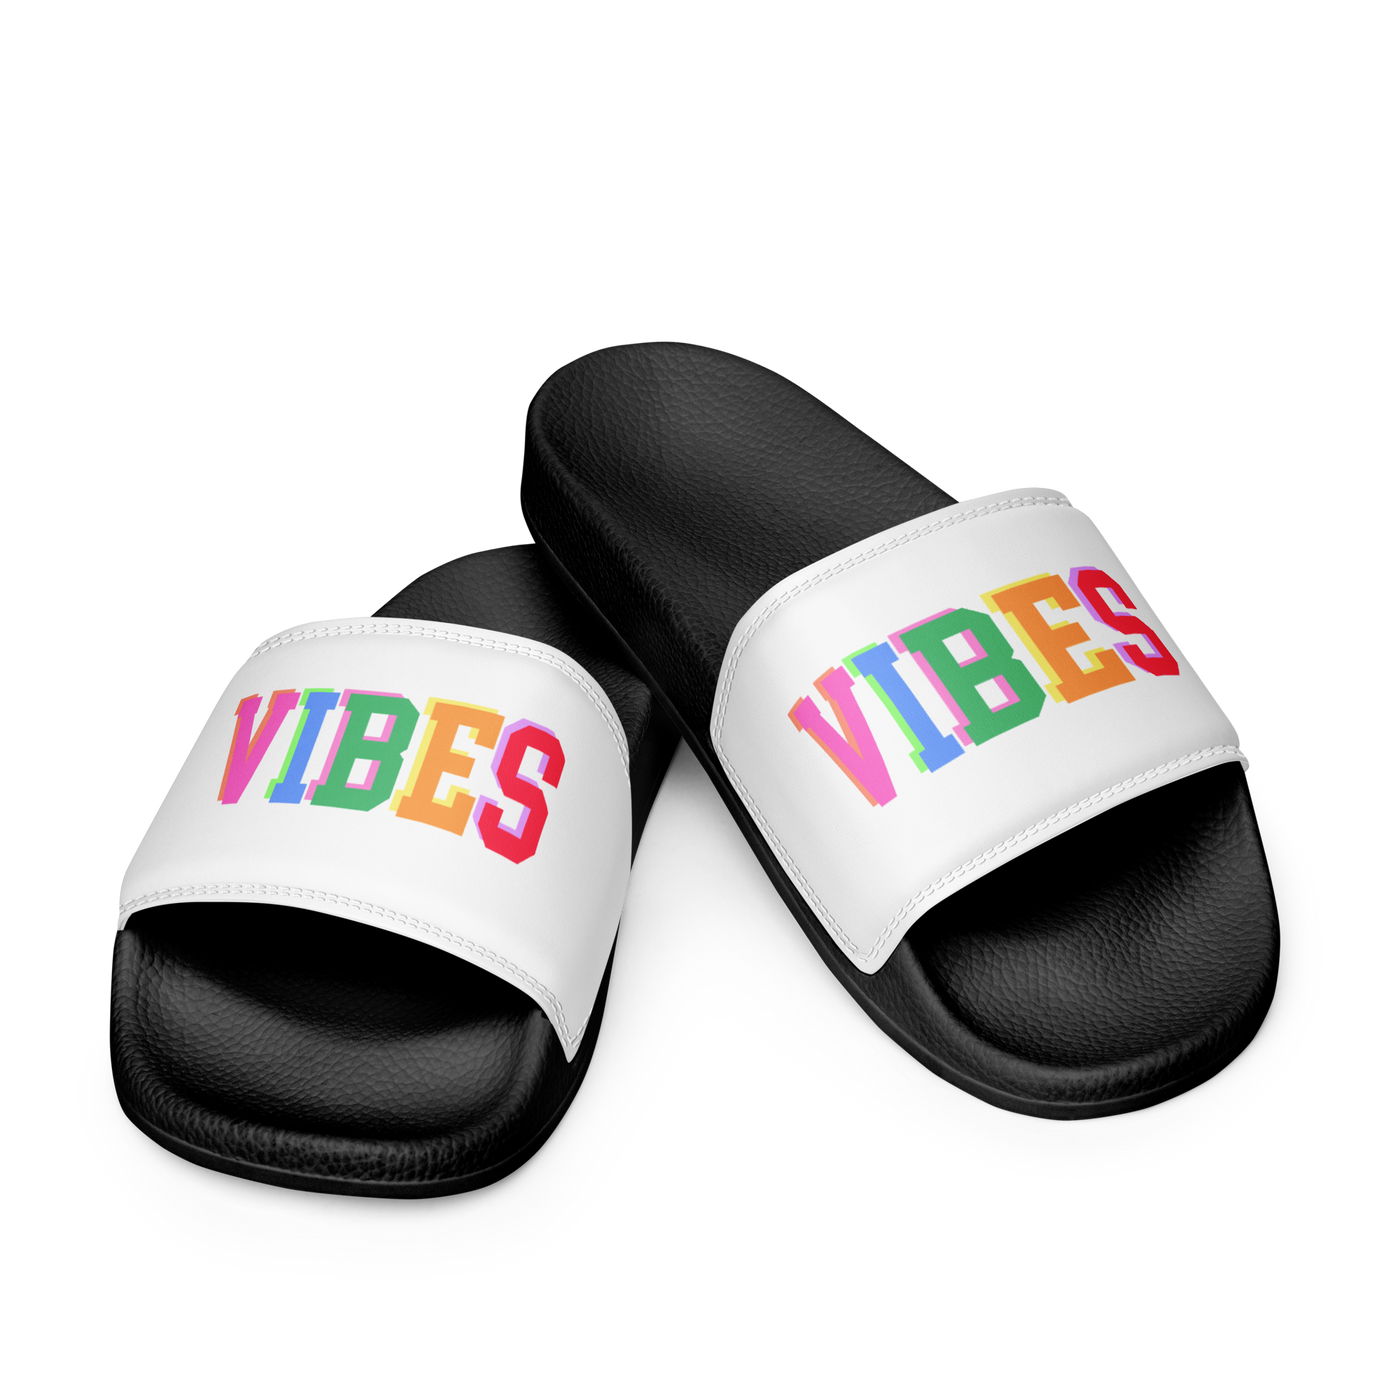 'Vibes' Women's Slides